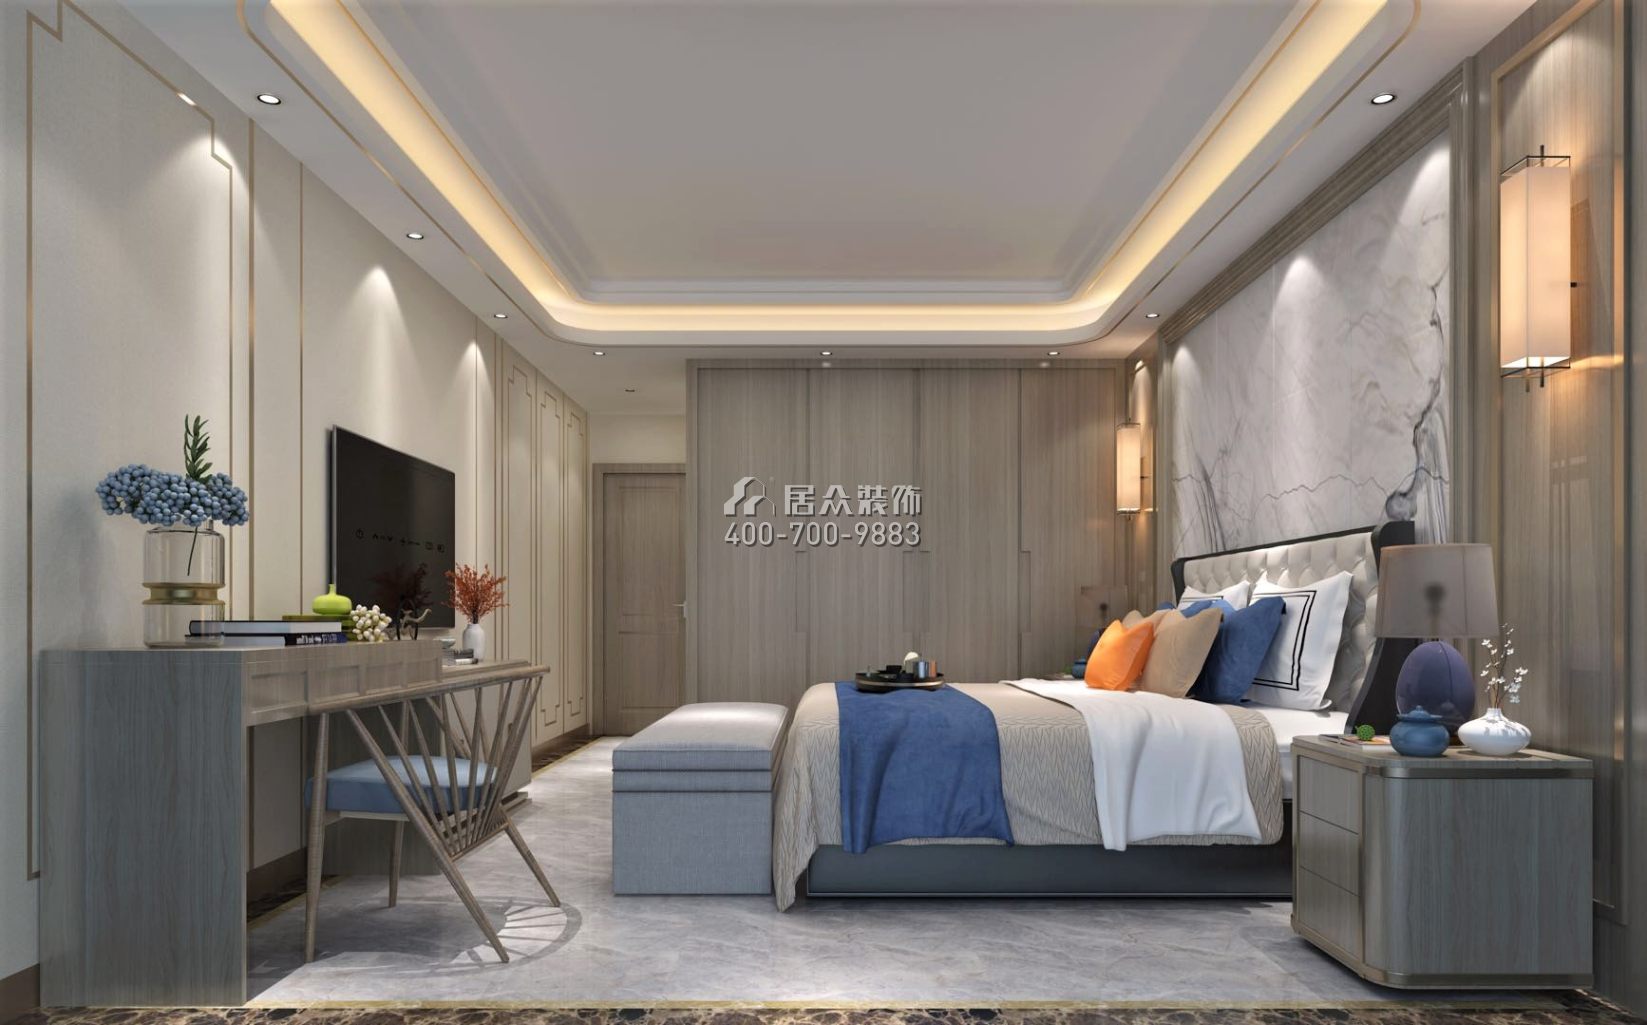 冠城世家180平方米中式风格平层户型卧室装修效果图